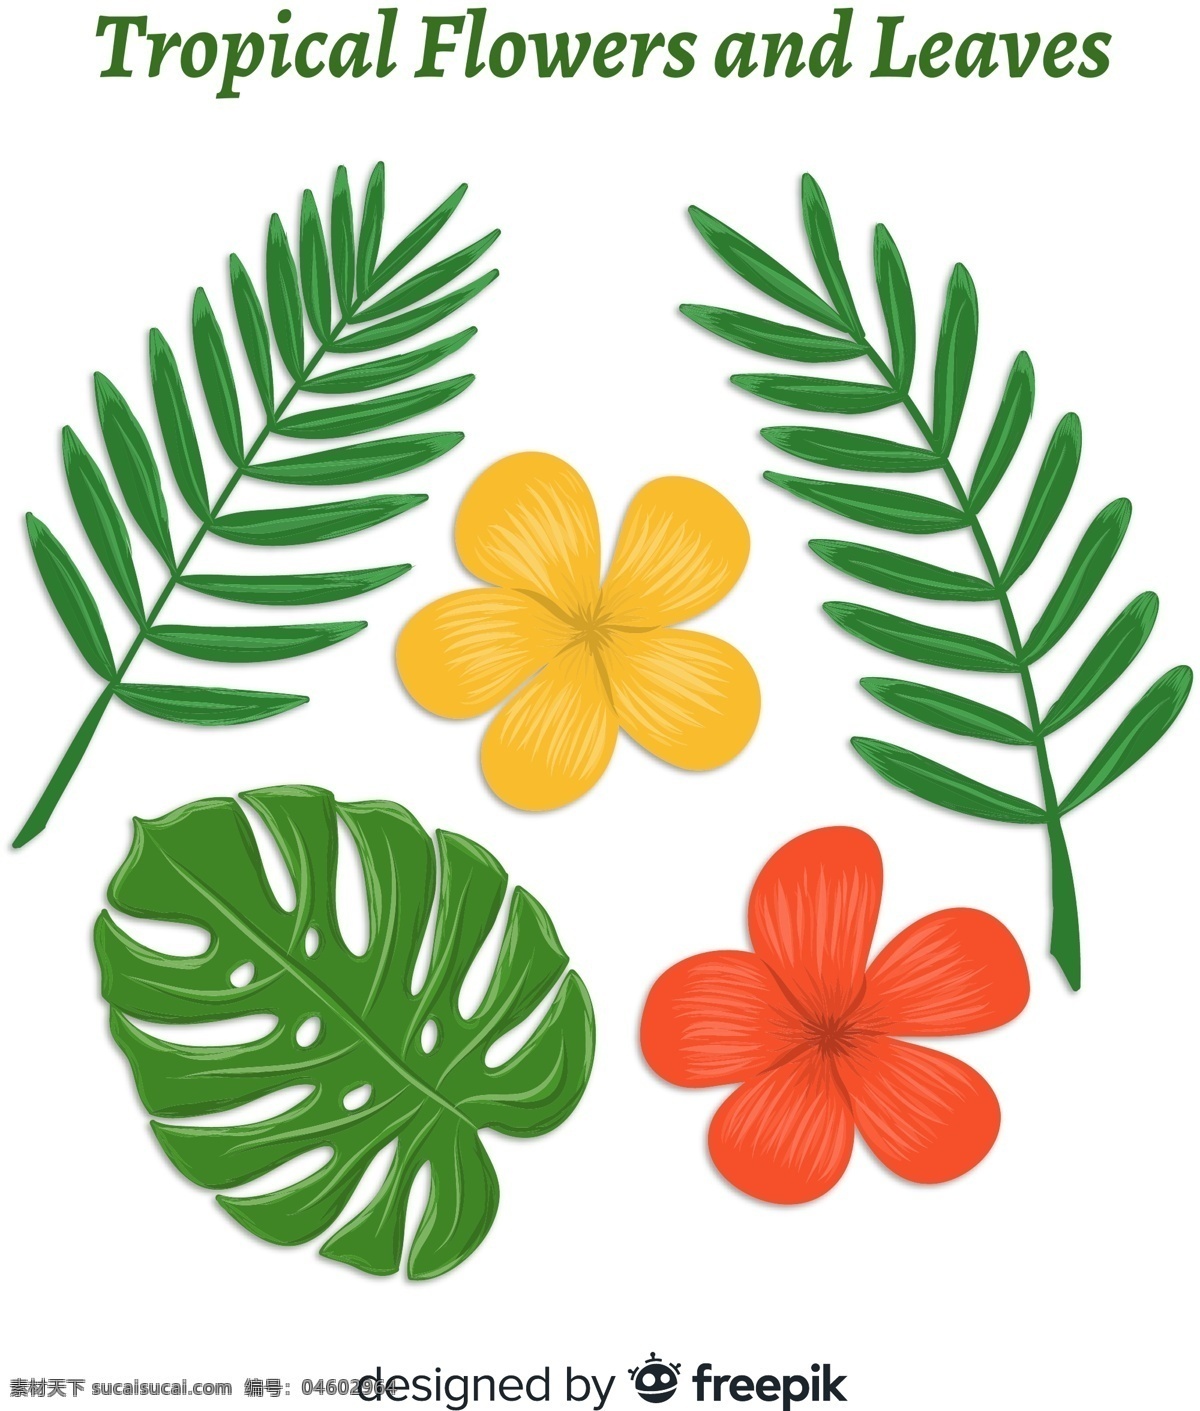 创意 热带 花卉 叶子 棕榈树叶 龟背竹叶 扶桑花 植物 生物世界 树木树叶